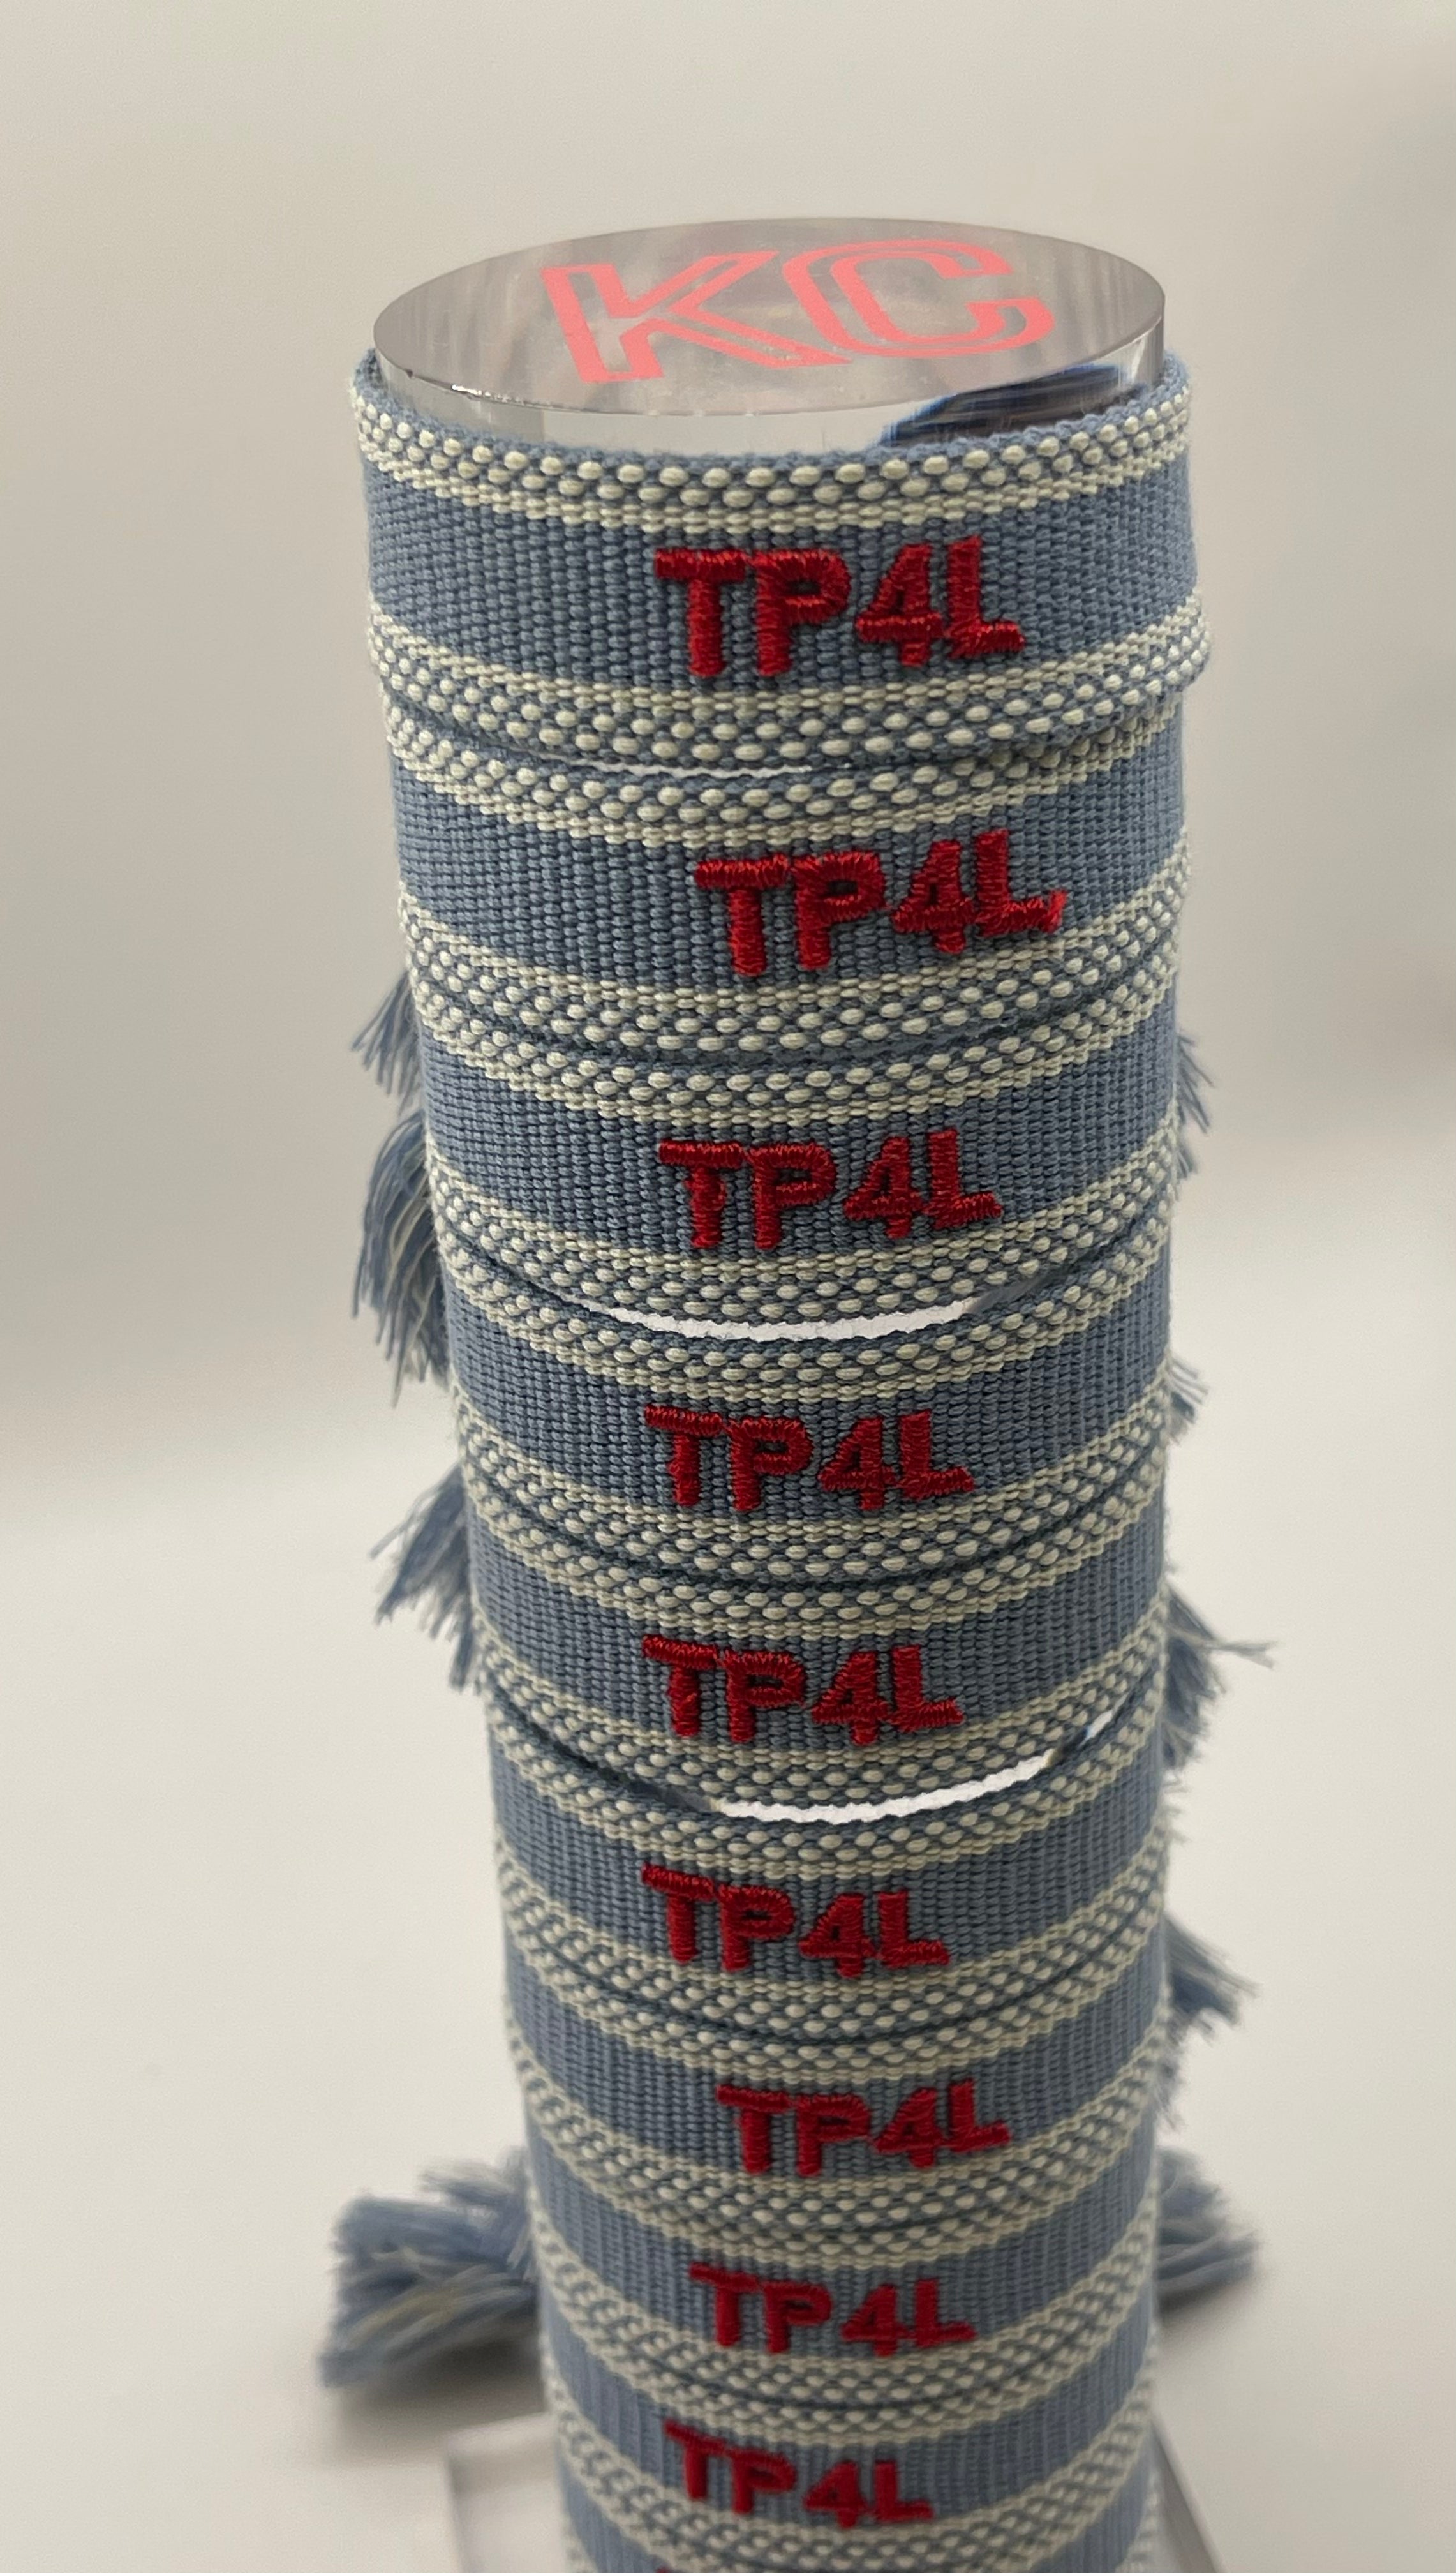 TP4L Woven Bracelet